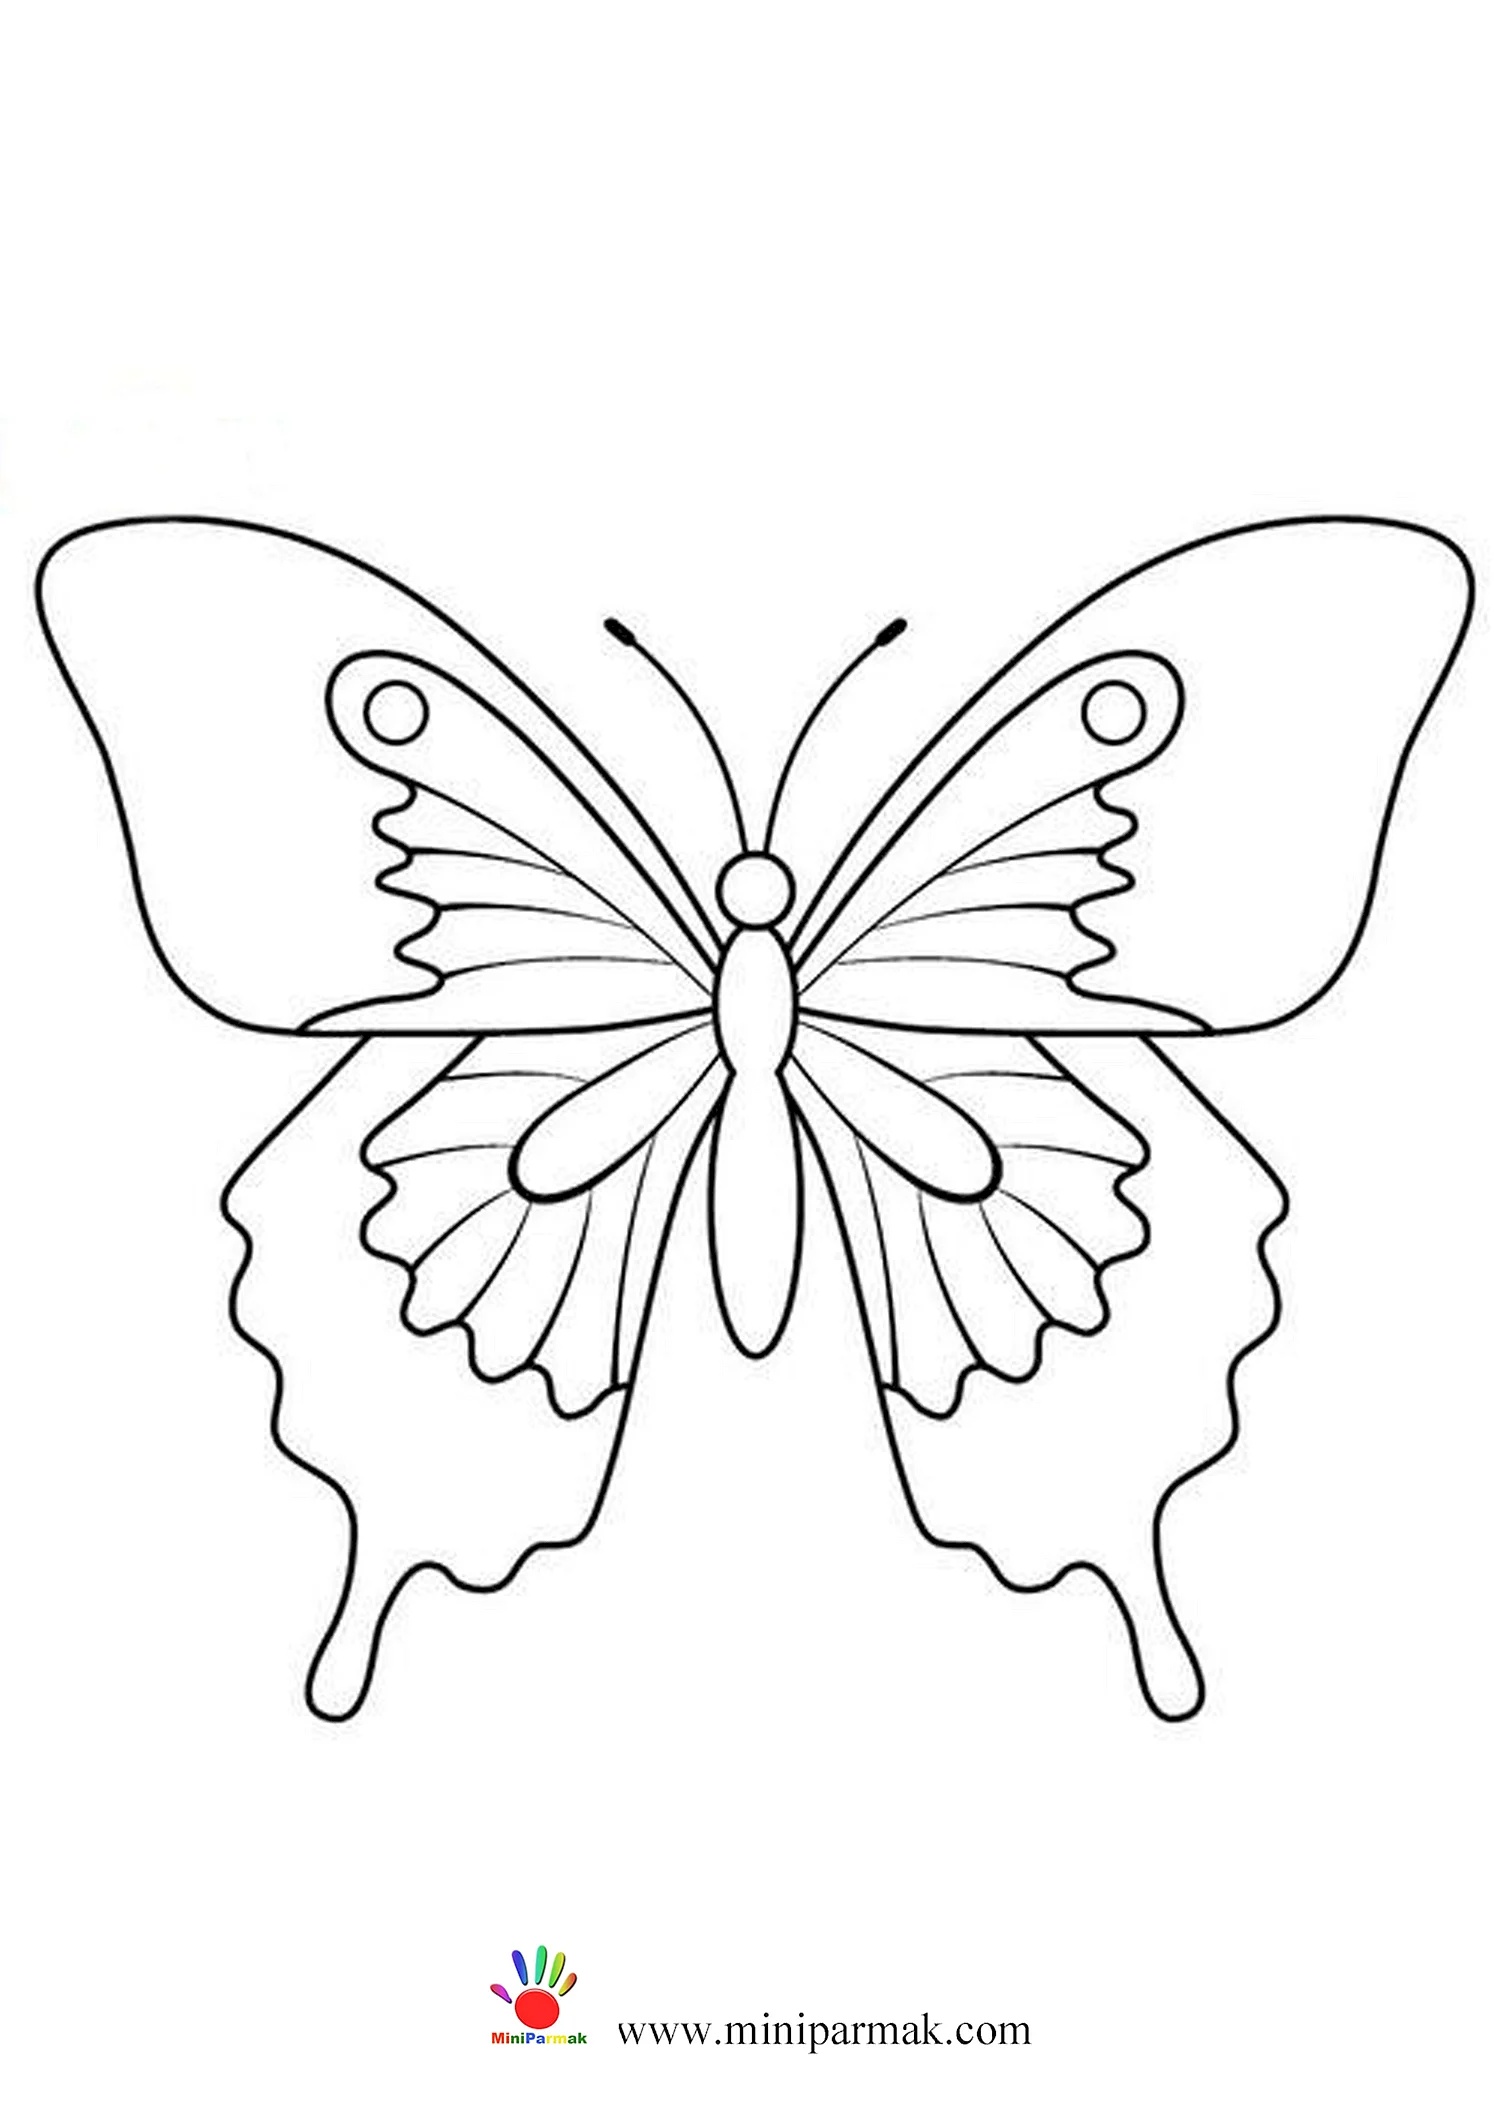 Трафарет бабочка для пластилинографии